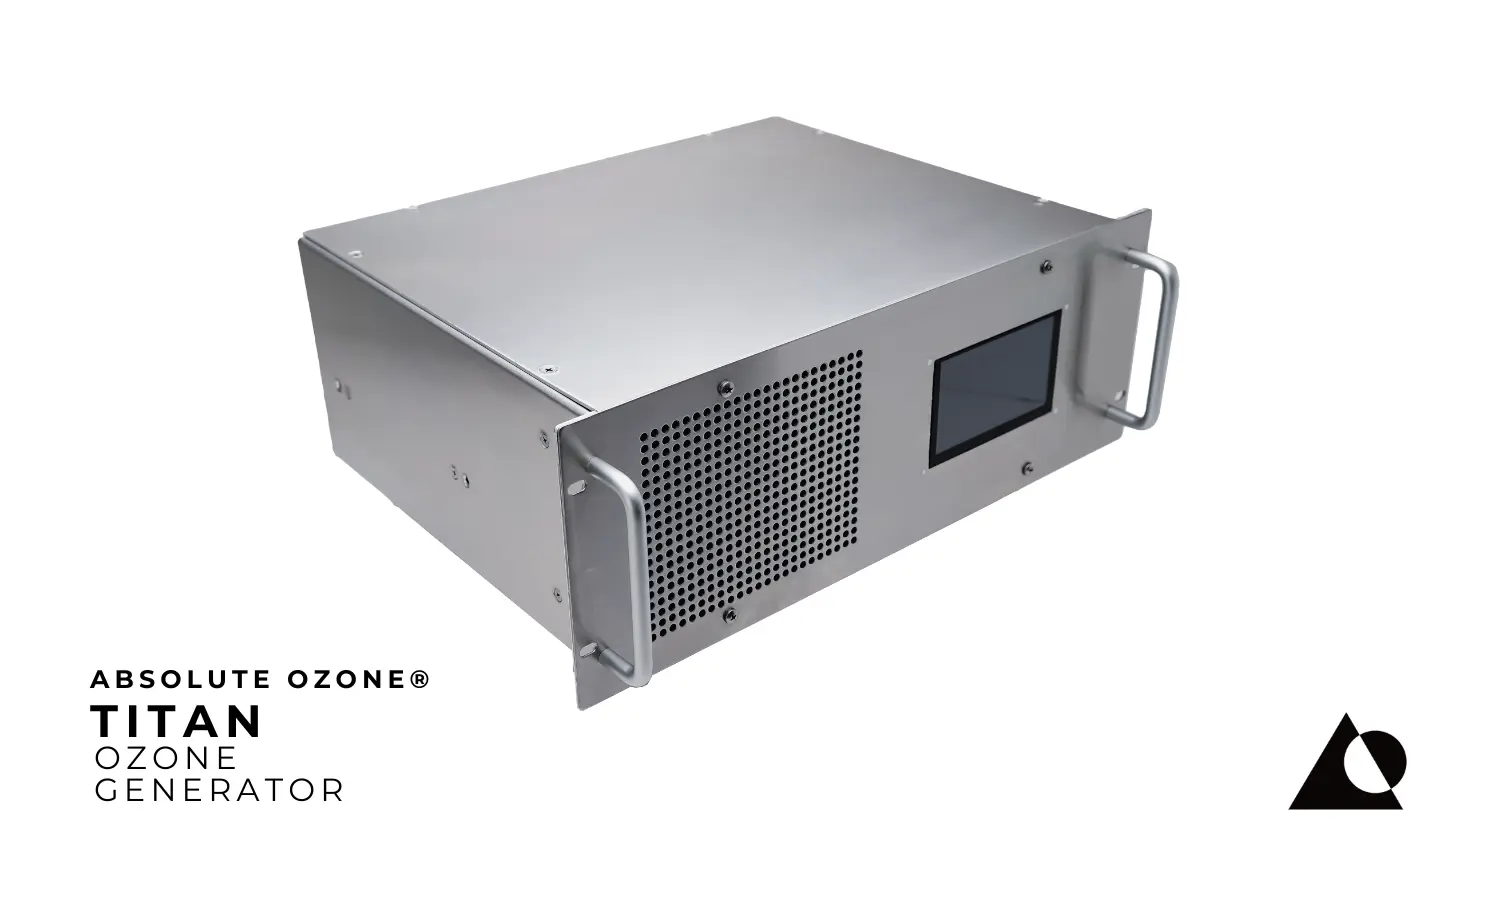 Absolute Ozone® Titan Industrial Generador de Ozono